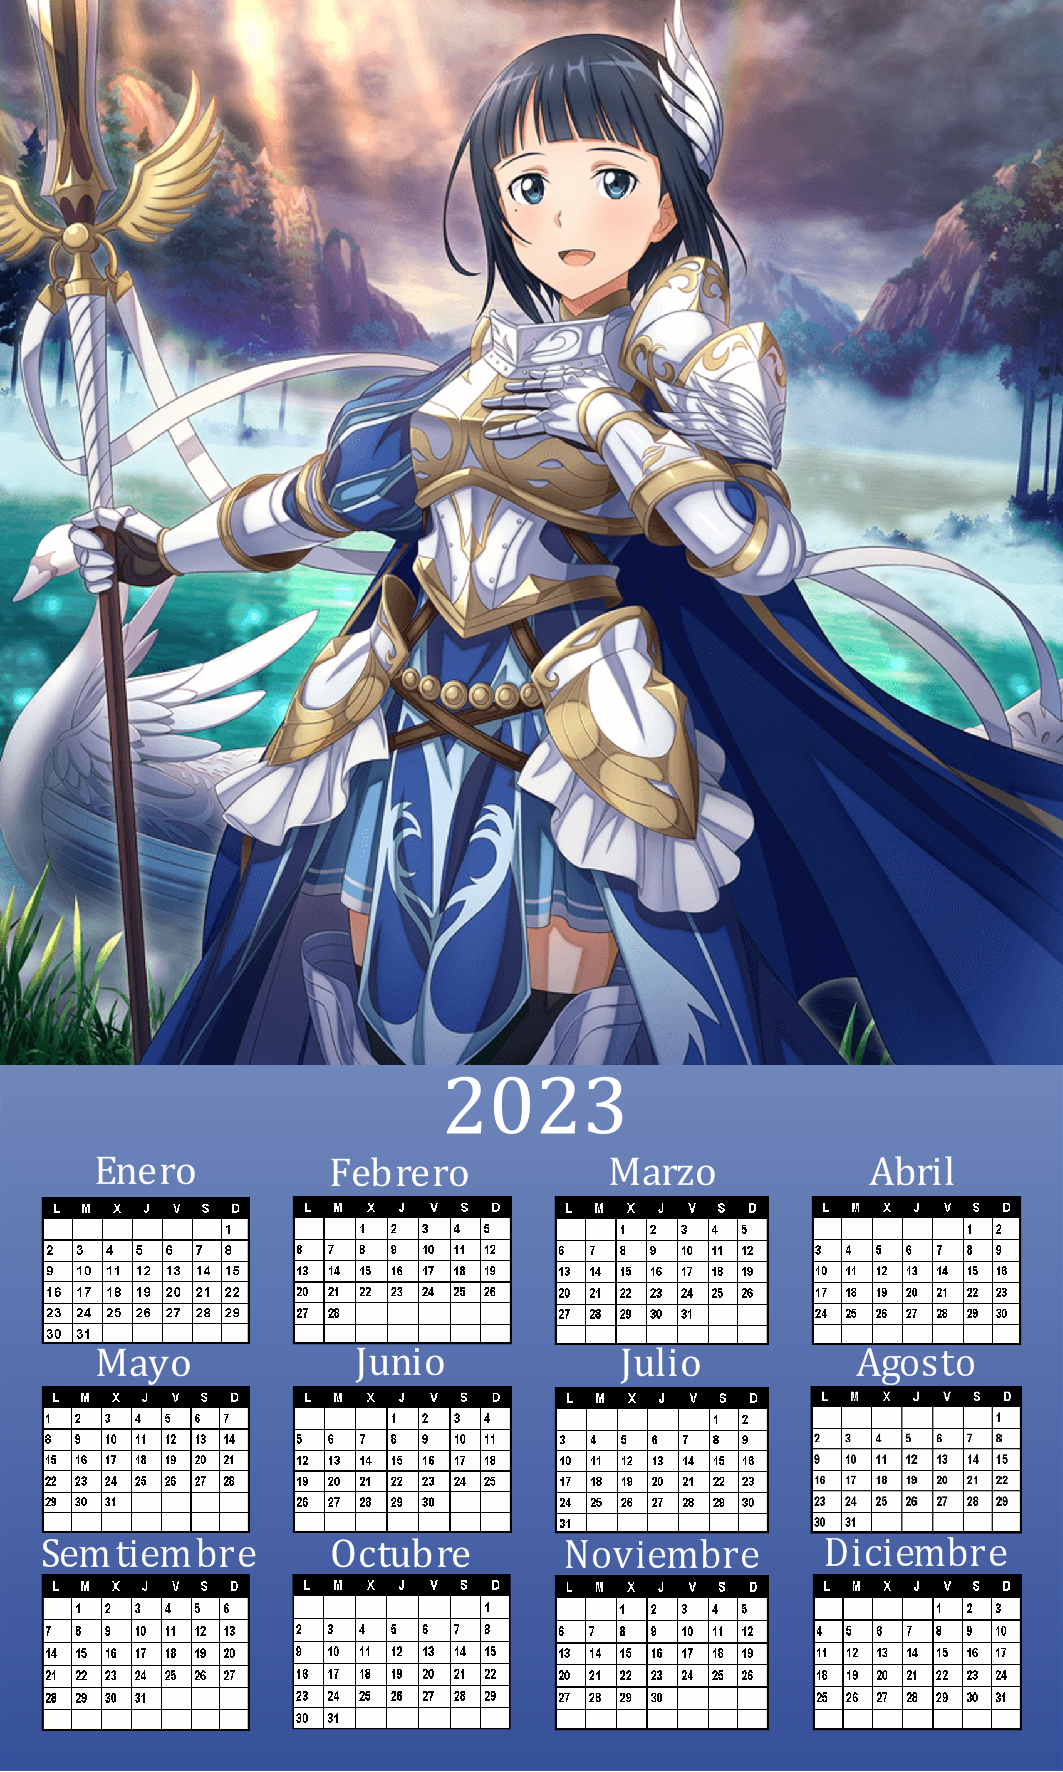 Calendario oficial de Sword art online by DeckardReznov on DeviantArt